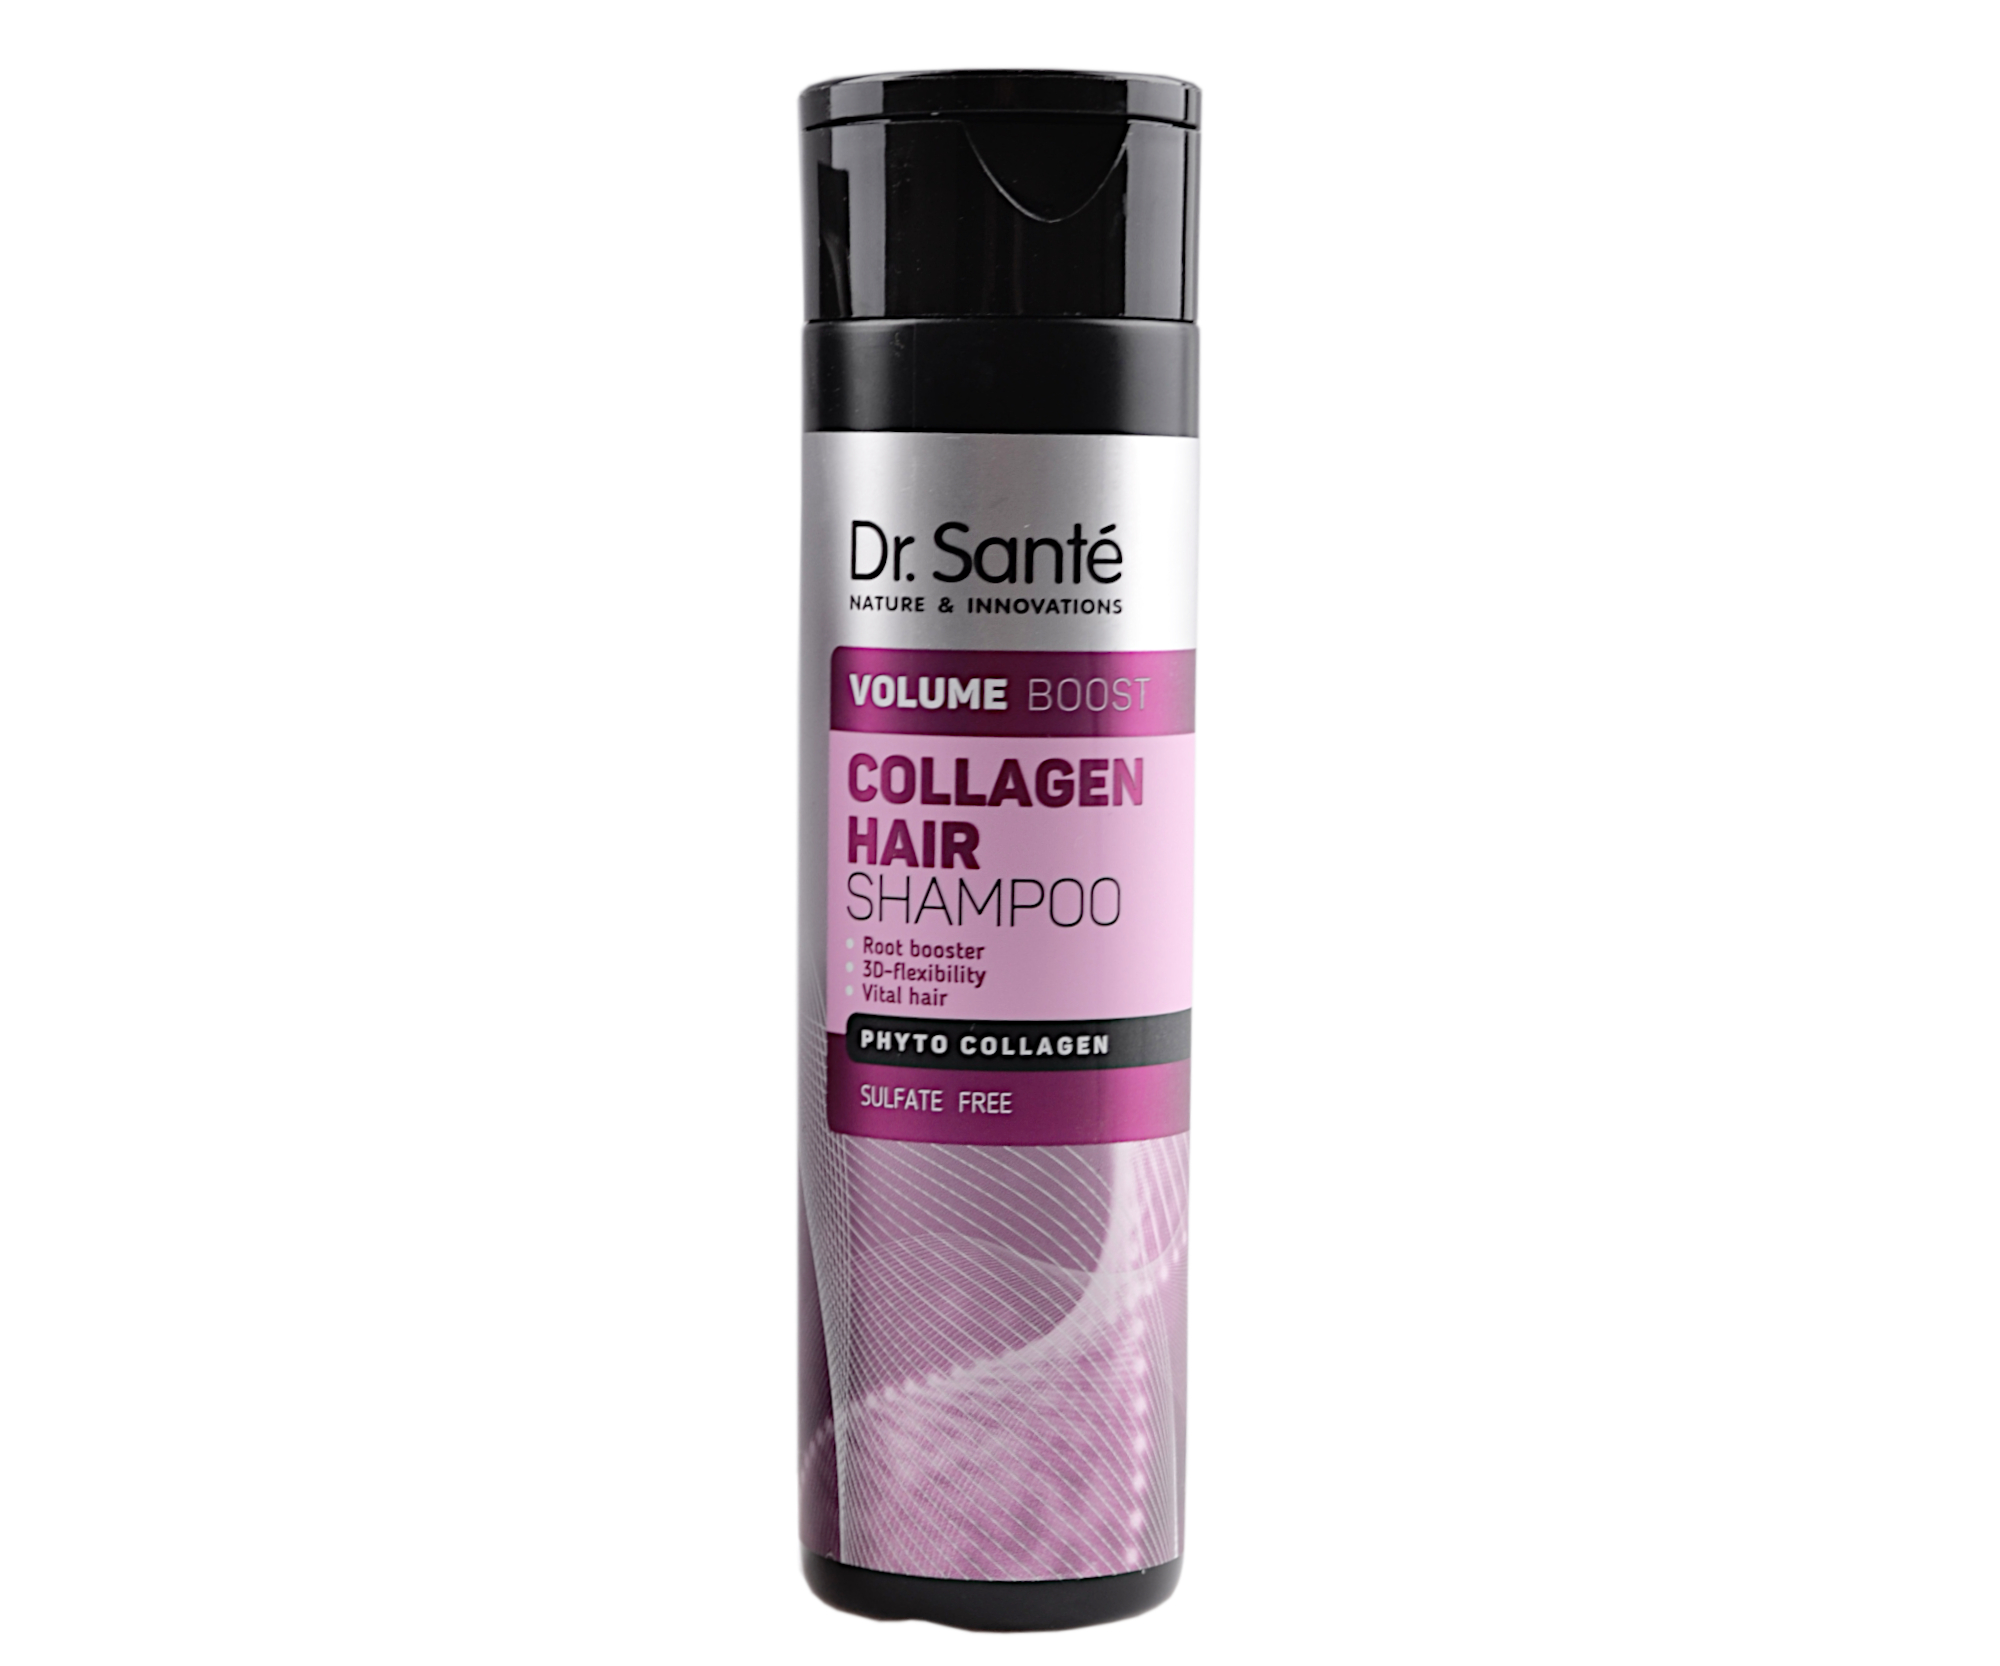 Šampon pro objem vlasů Dr. Santé Collagen Hair - 250 ml